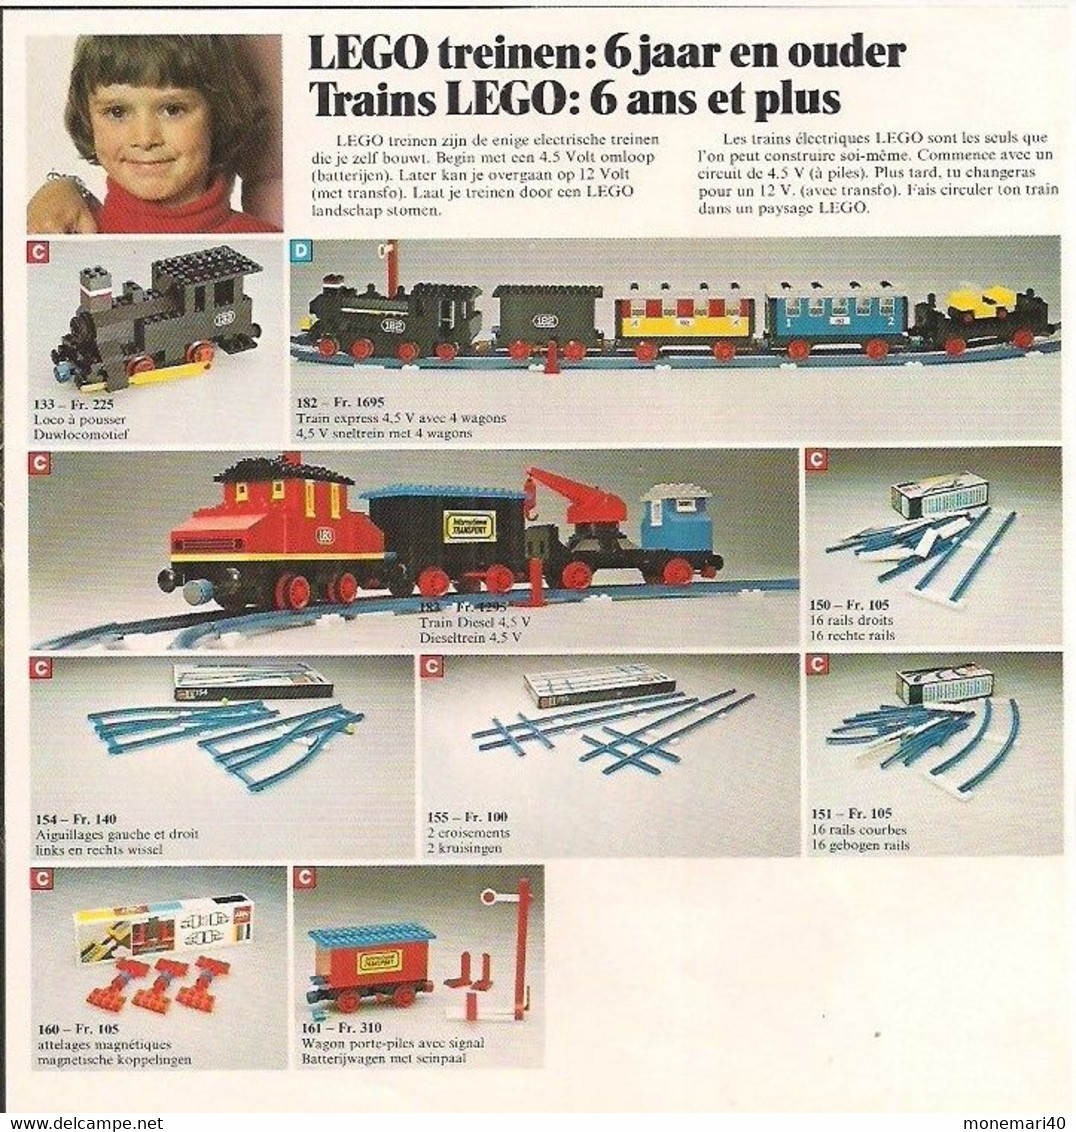 LEGO SYSTEM - CATALOGUE - GUIDE FAMILIAL - GEZINSWEGWIJZER - 1976.